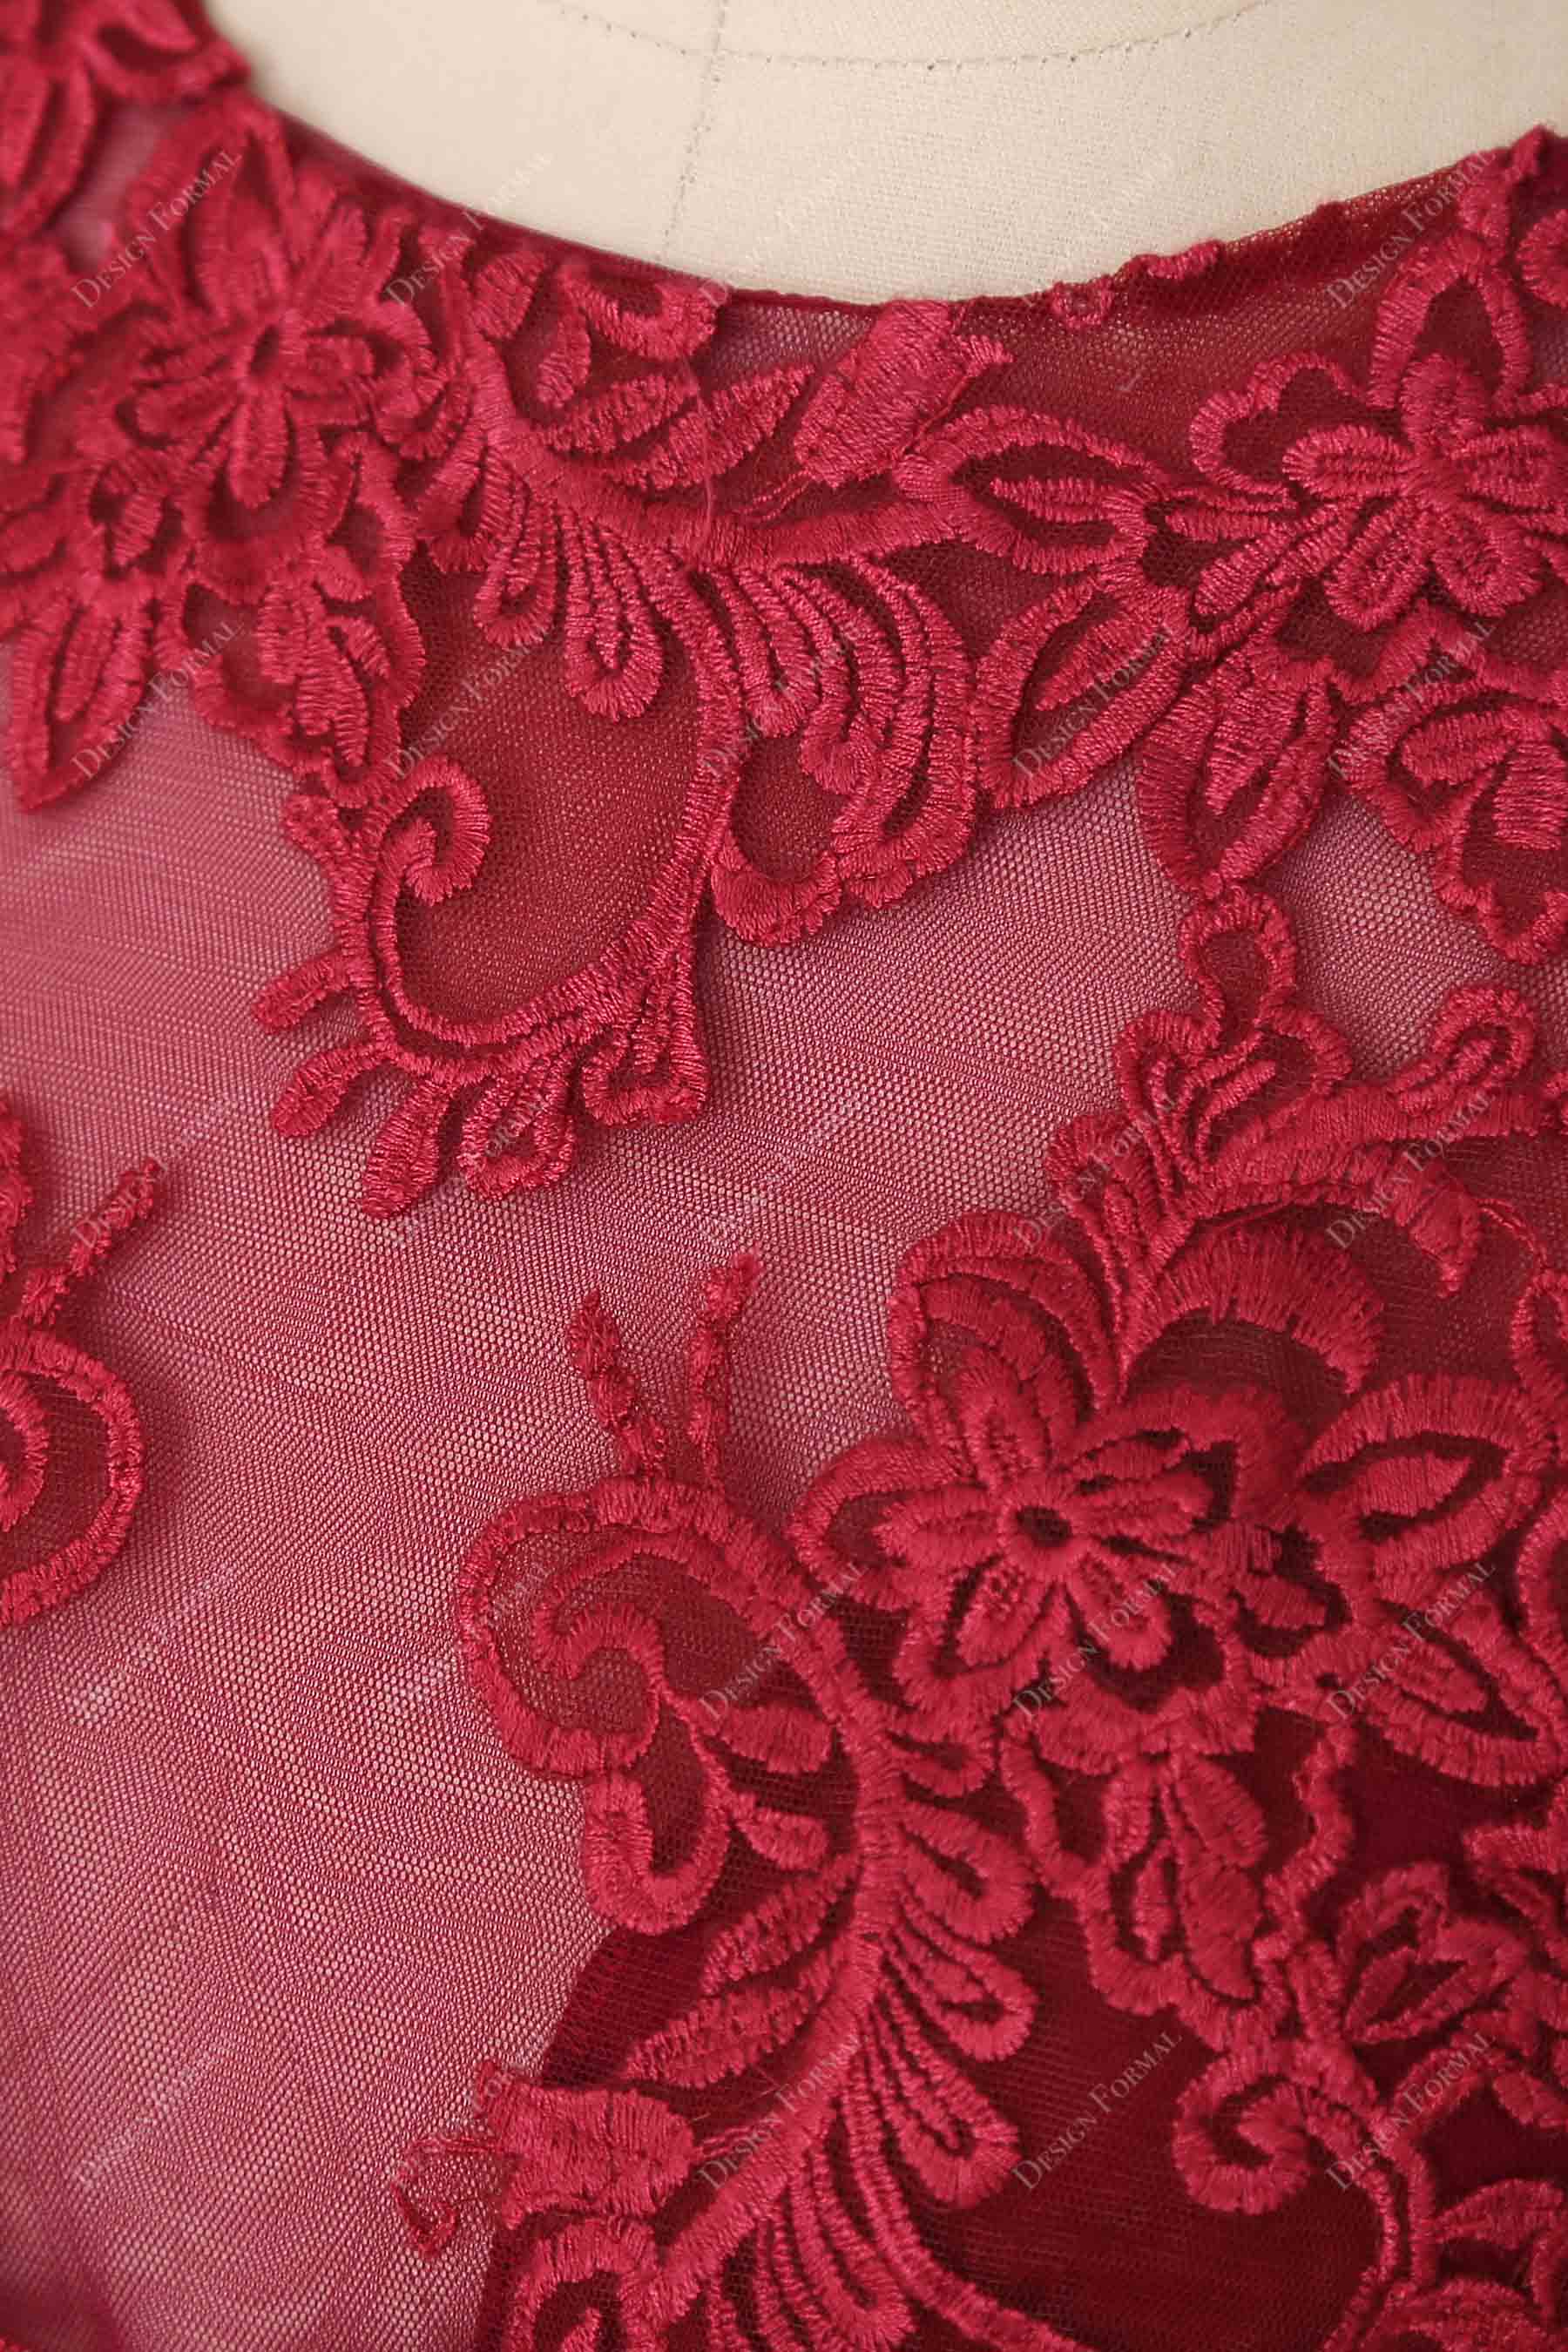 nice lace appliques detail